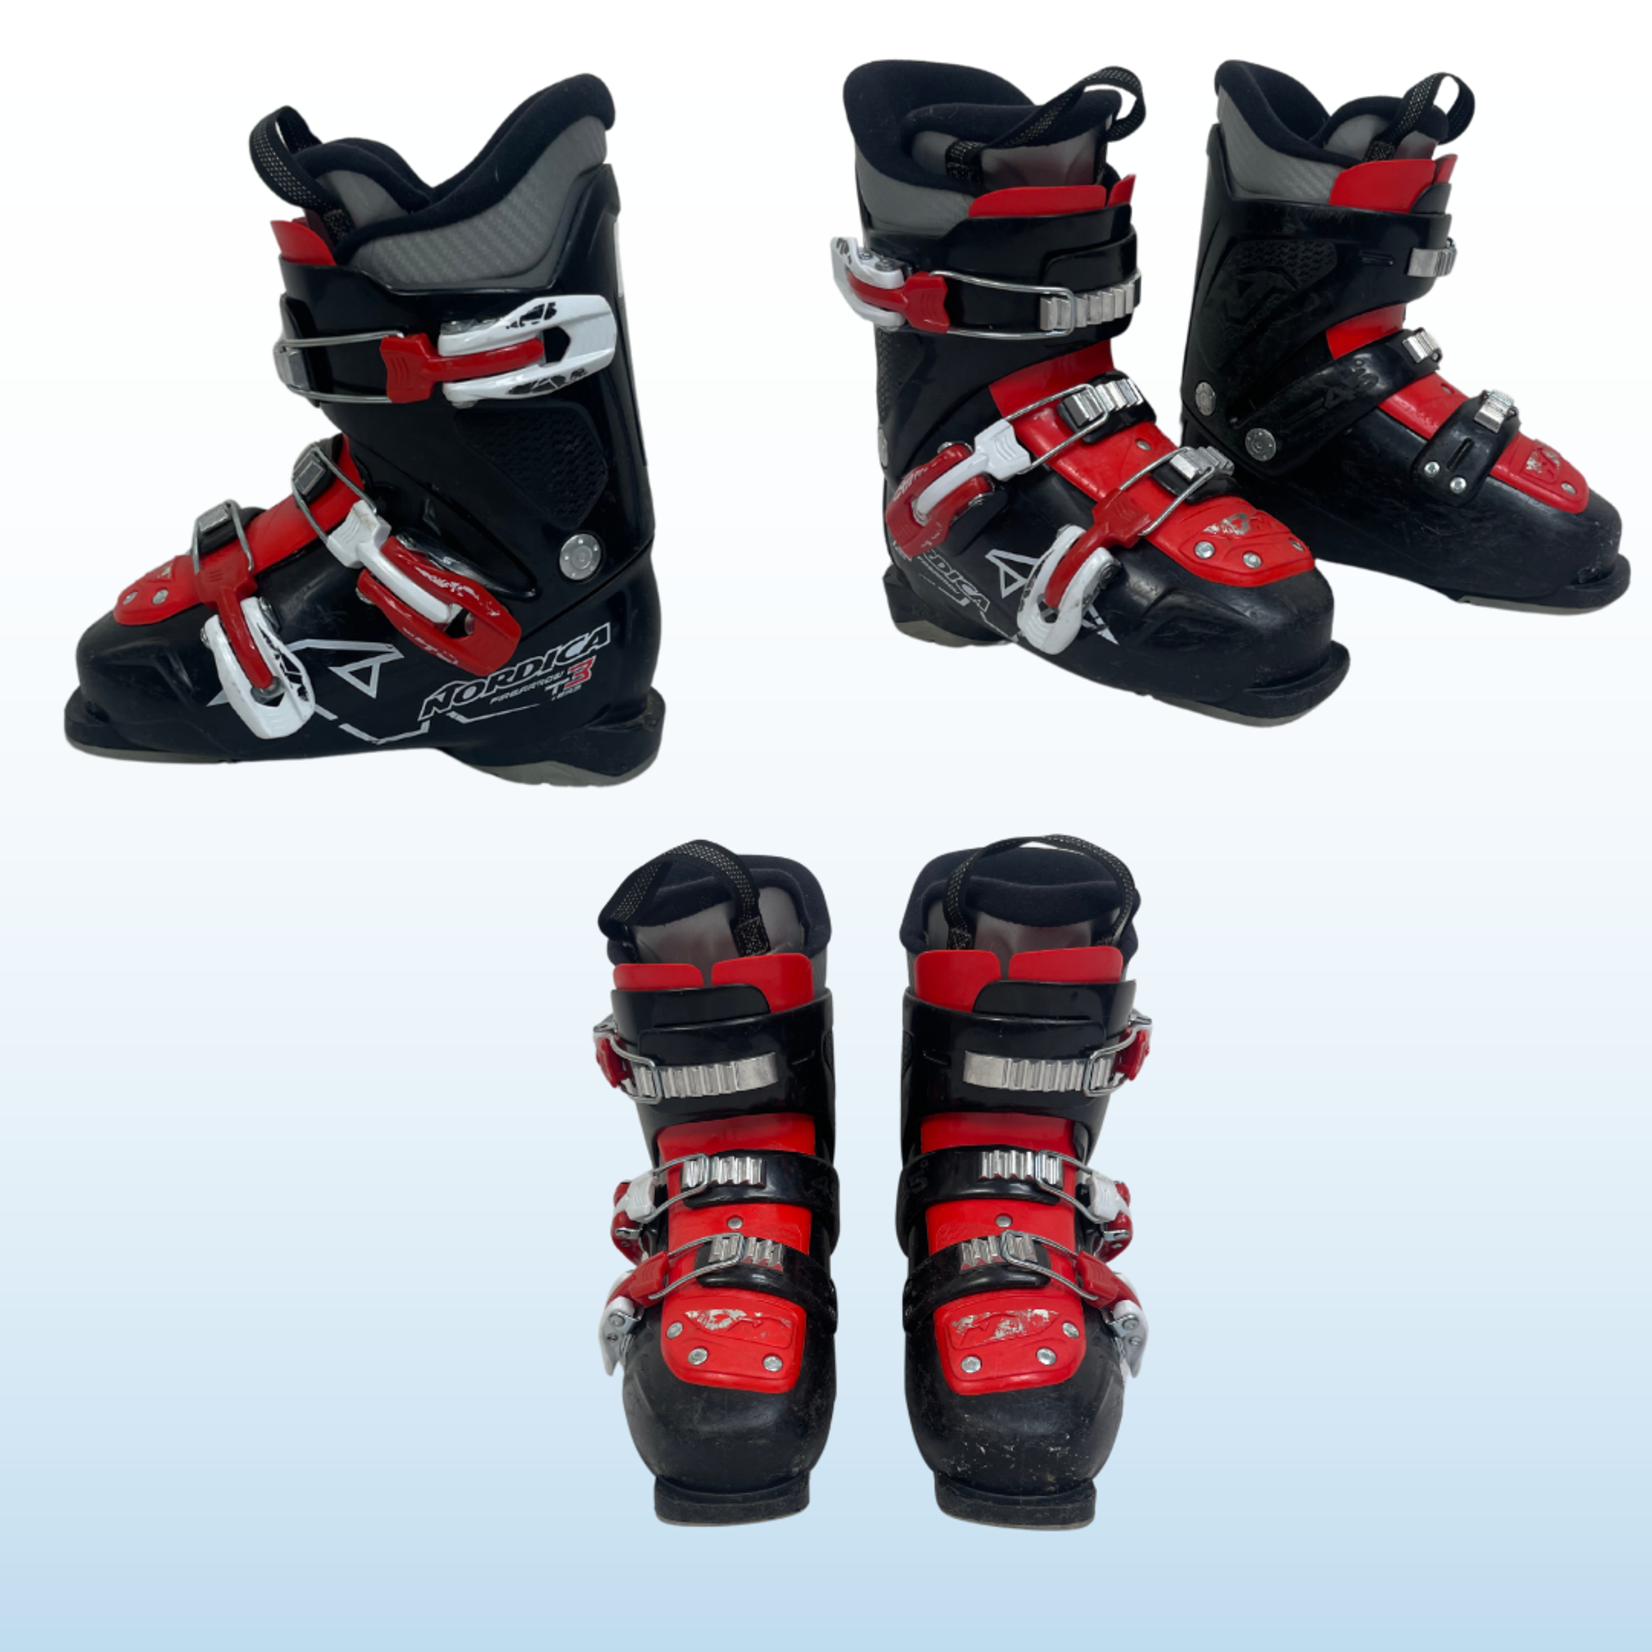 Nordica Nordica Firearrow Team T3 Kids Ski Boots, Size 22.5